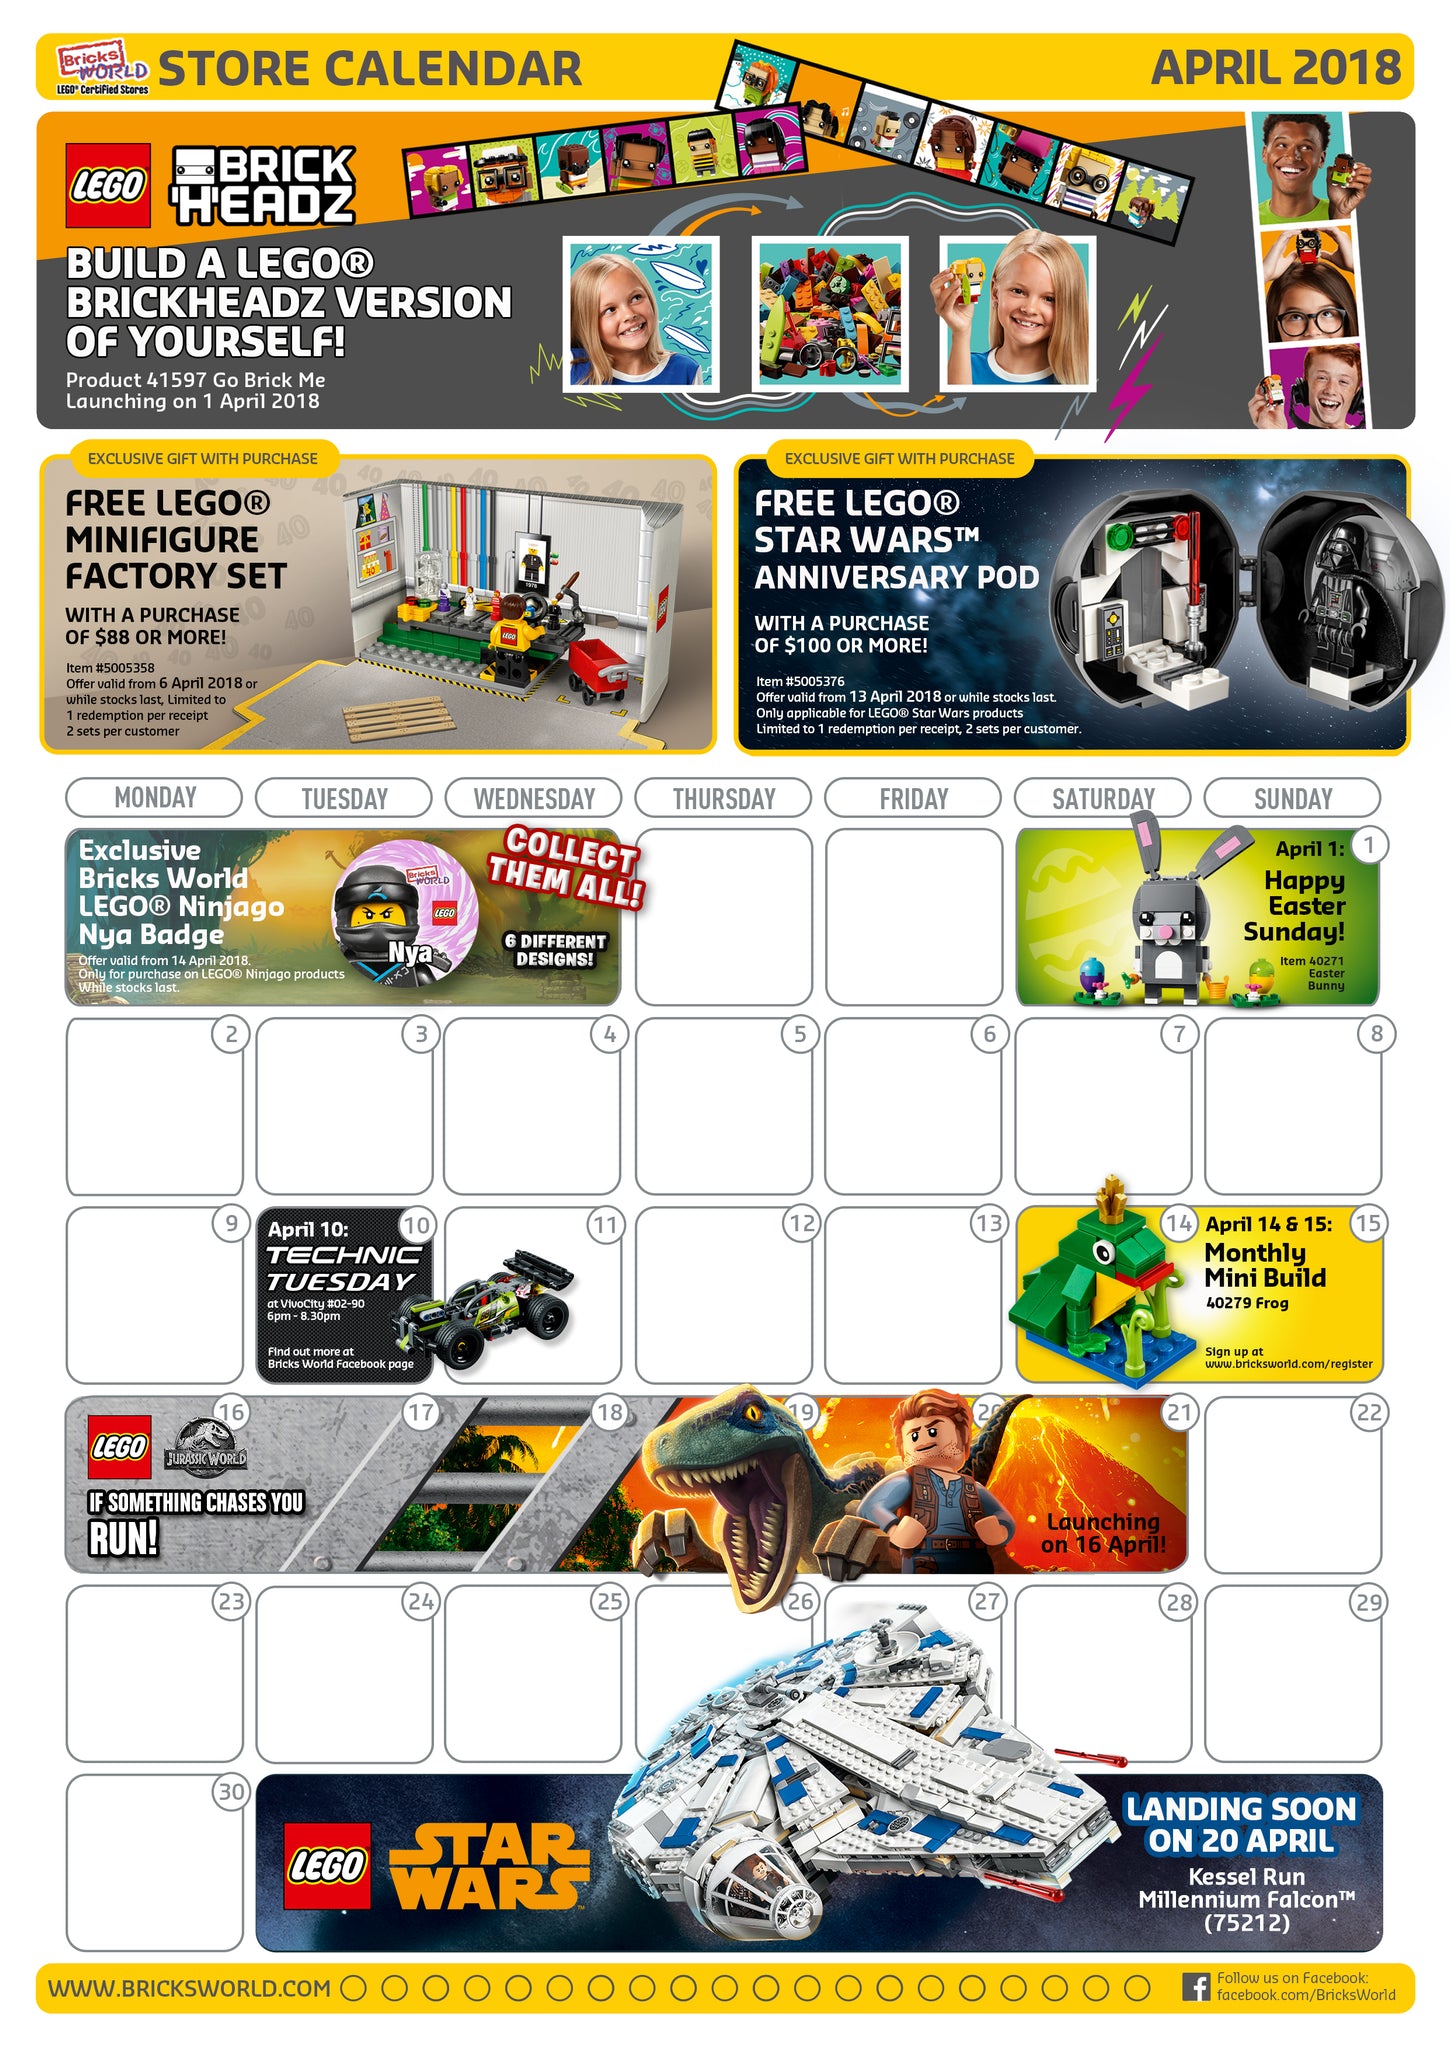 Lego Store Calendar March 2021 January 2020 LEGO Store Calendar Now